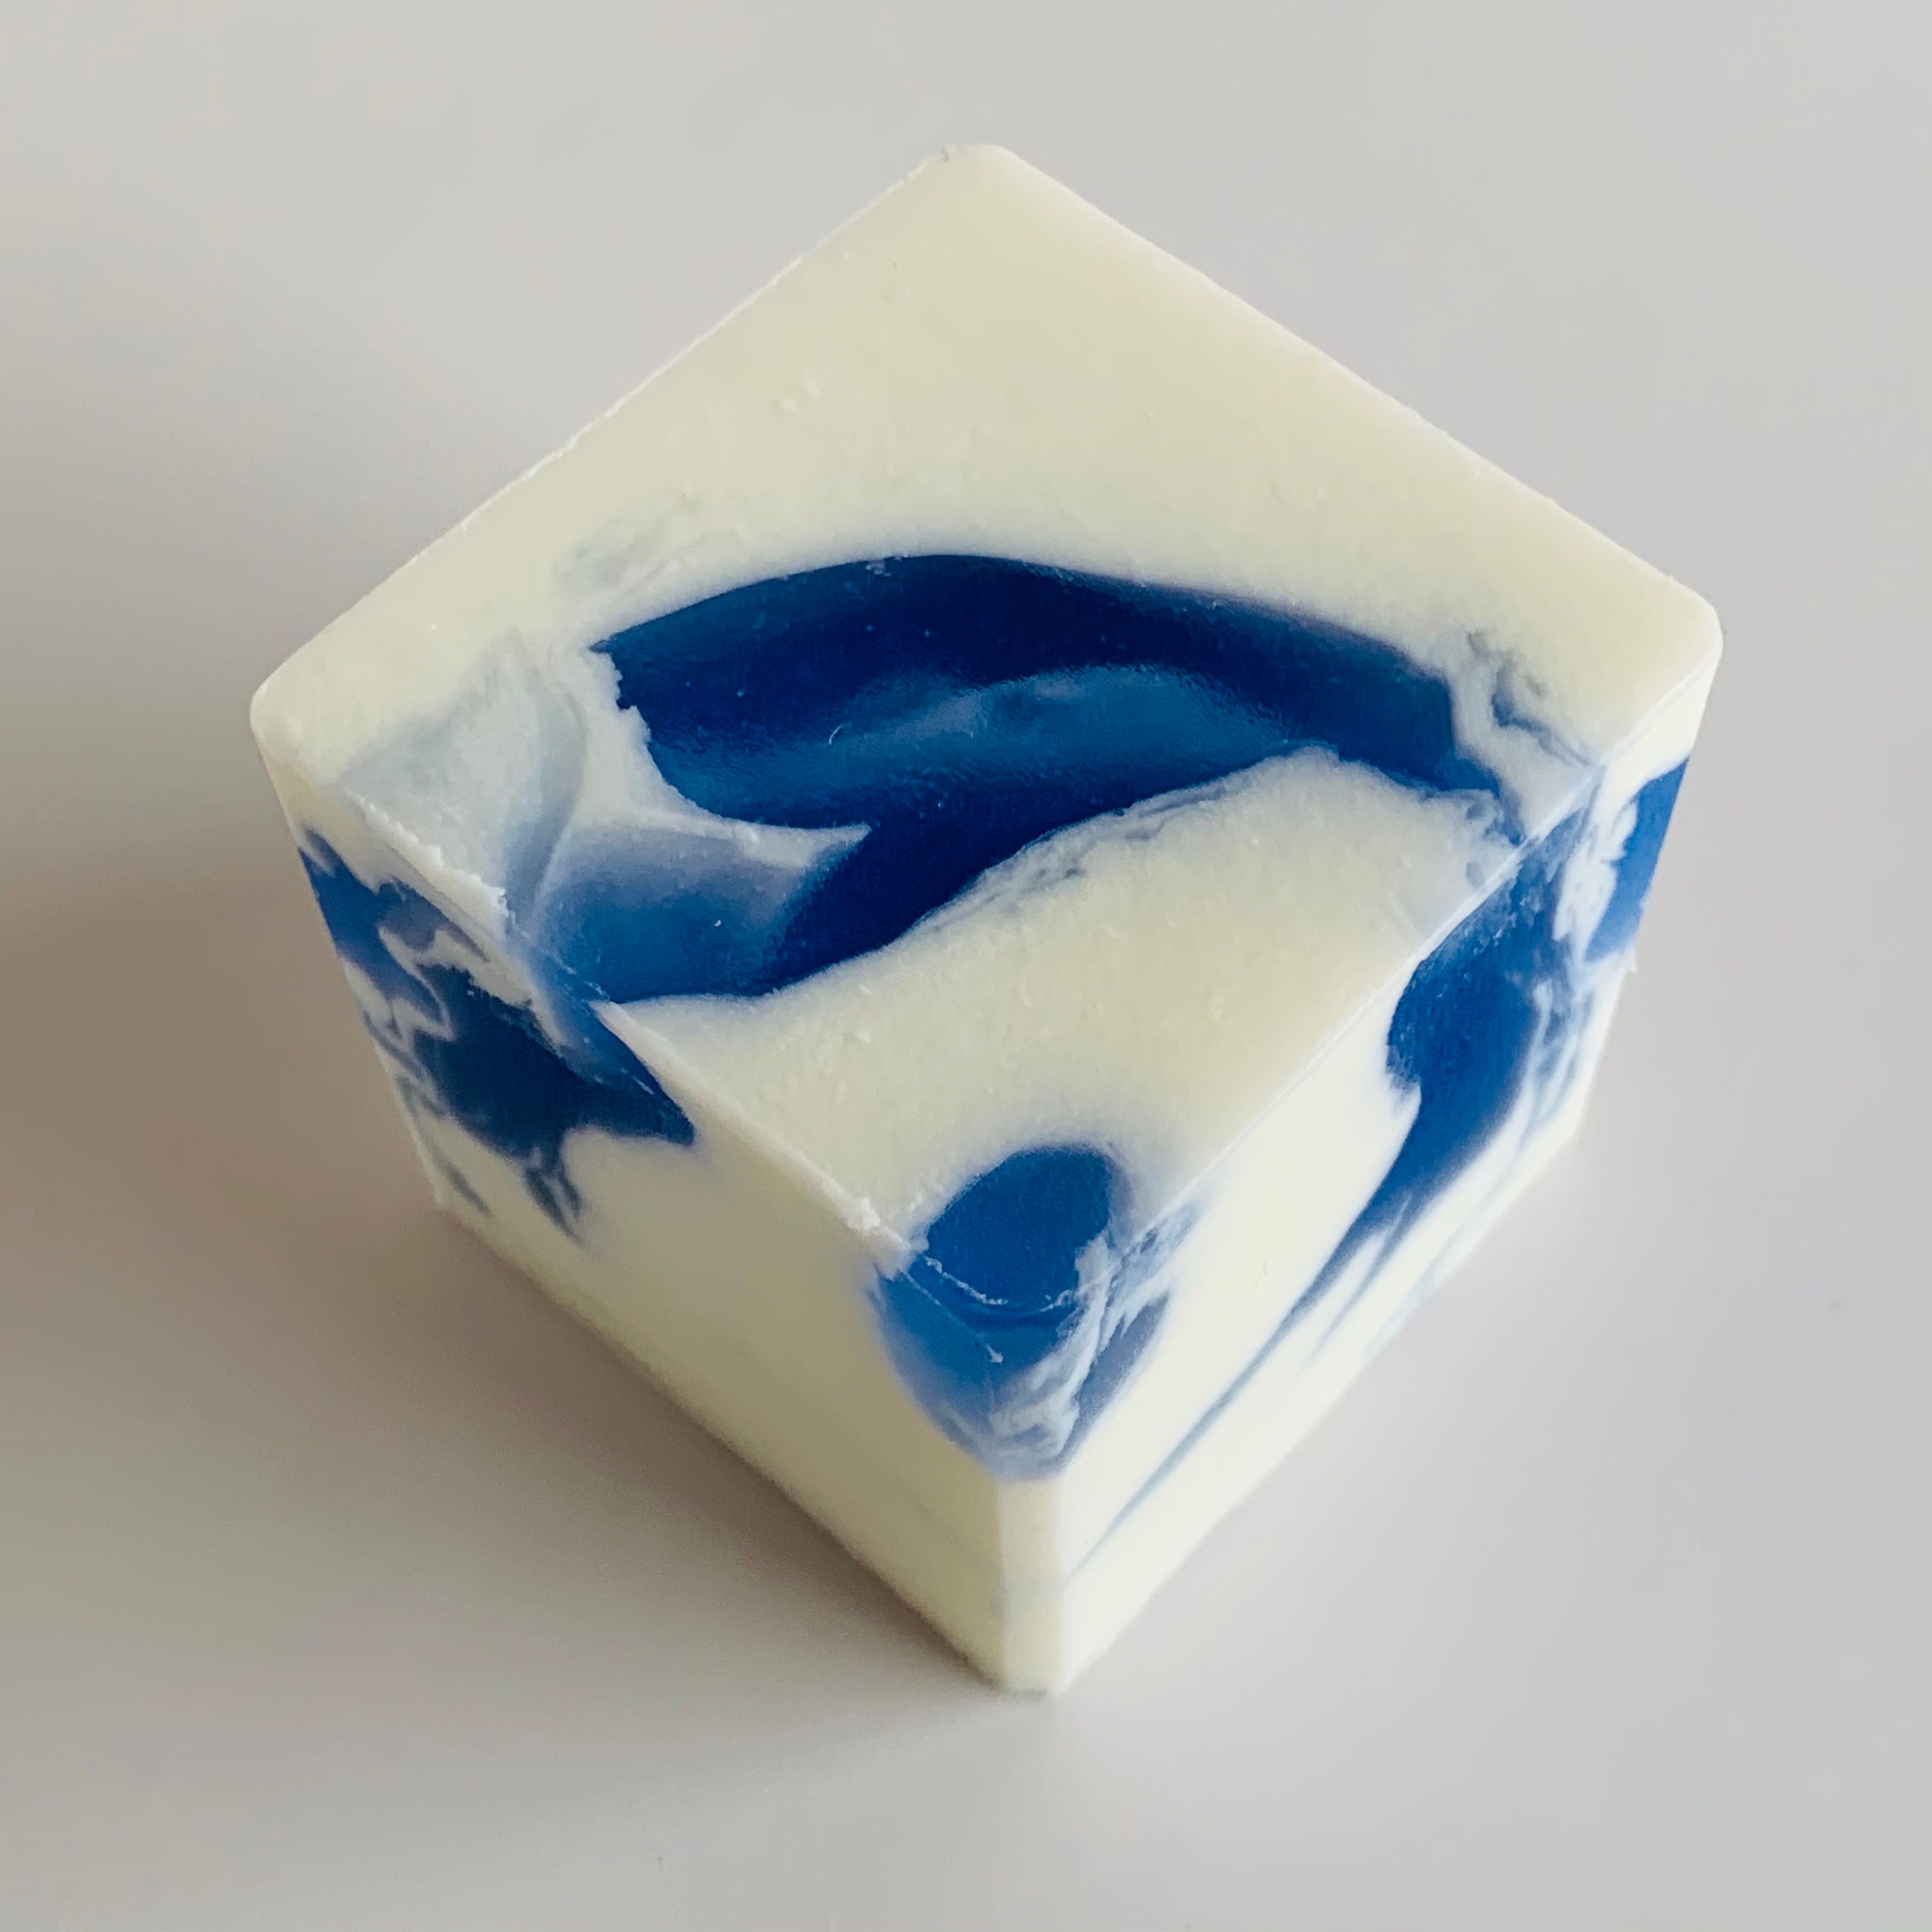 Blue Porcelain Soap Cube